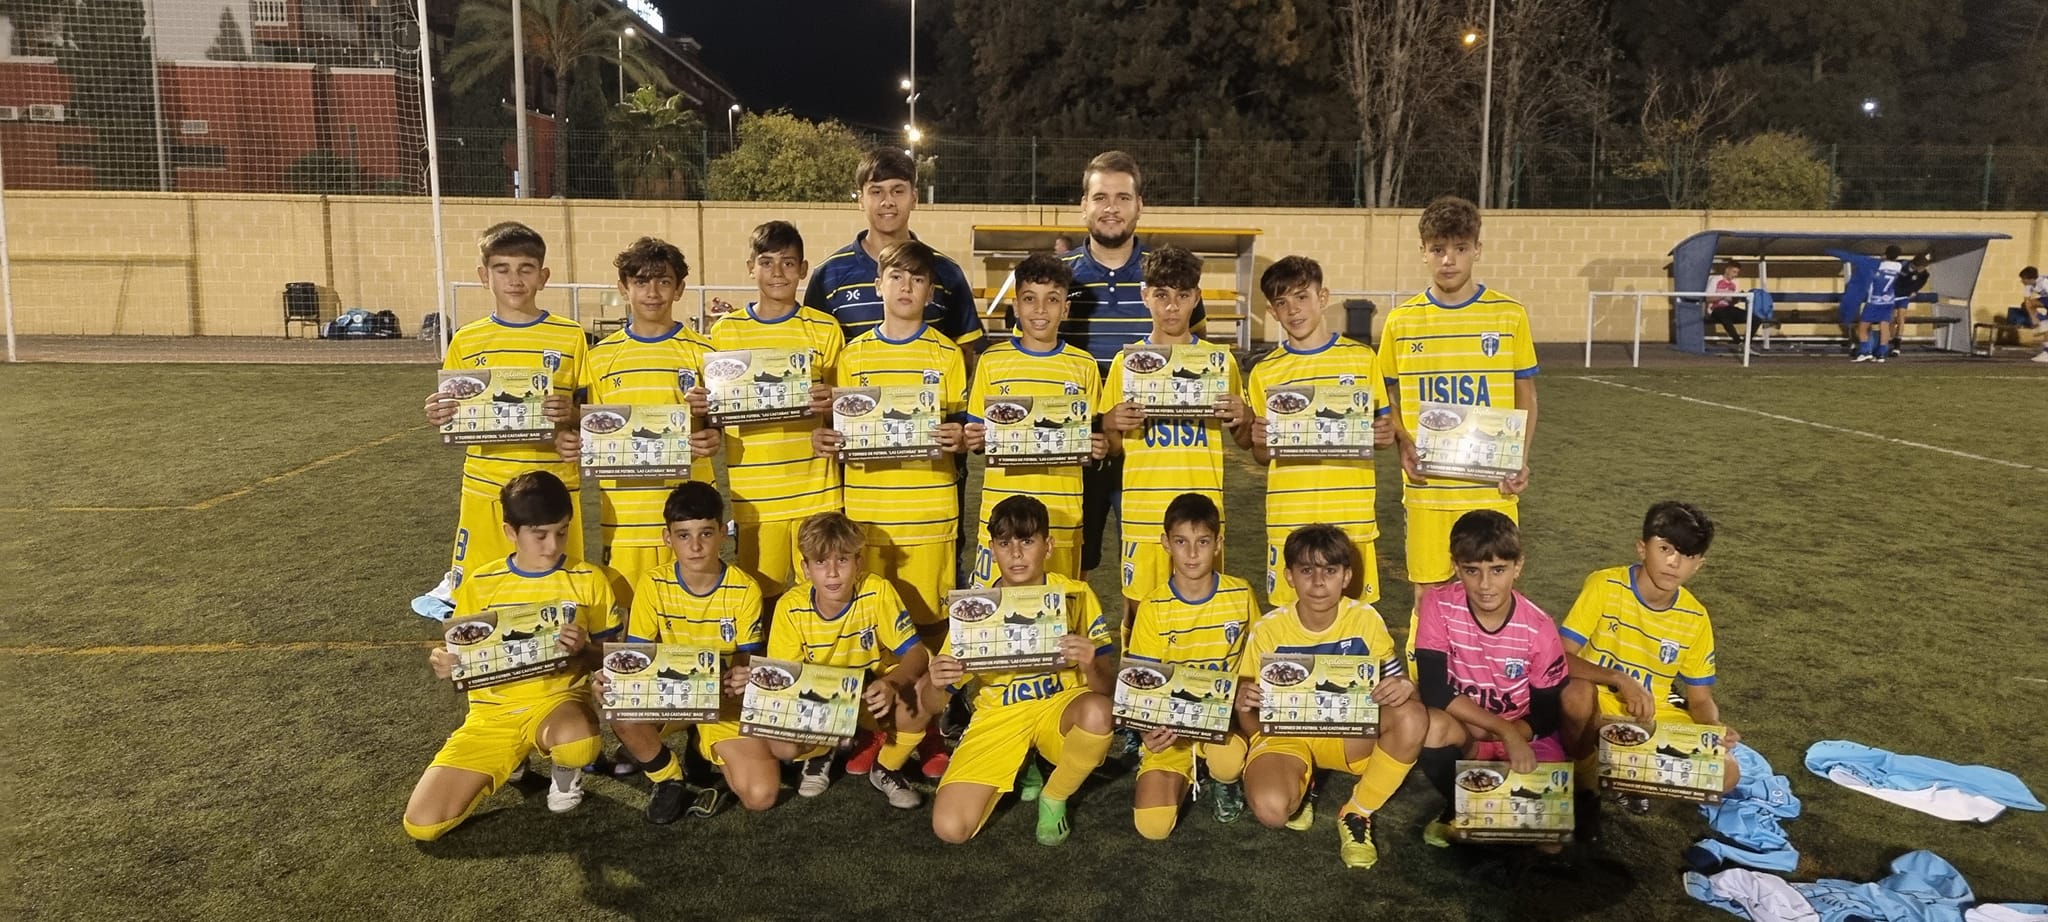 Éxito de la V Edición del Torneo de Fútbol Base “Las Castañas” celebrado en Isla Cristina